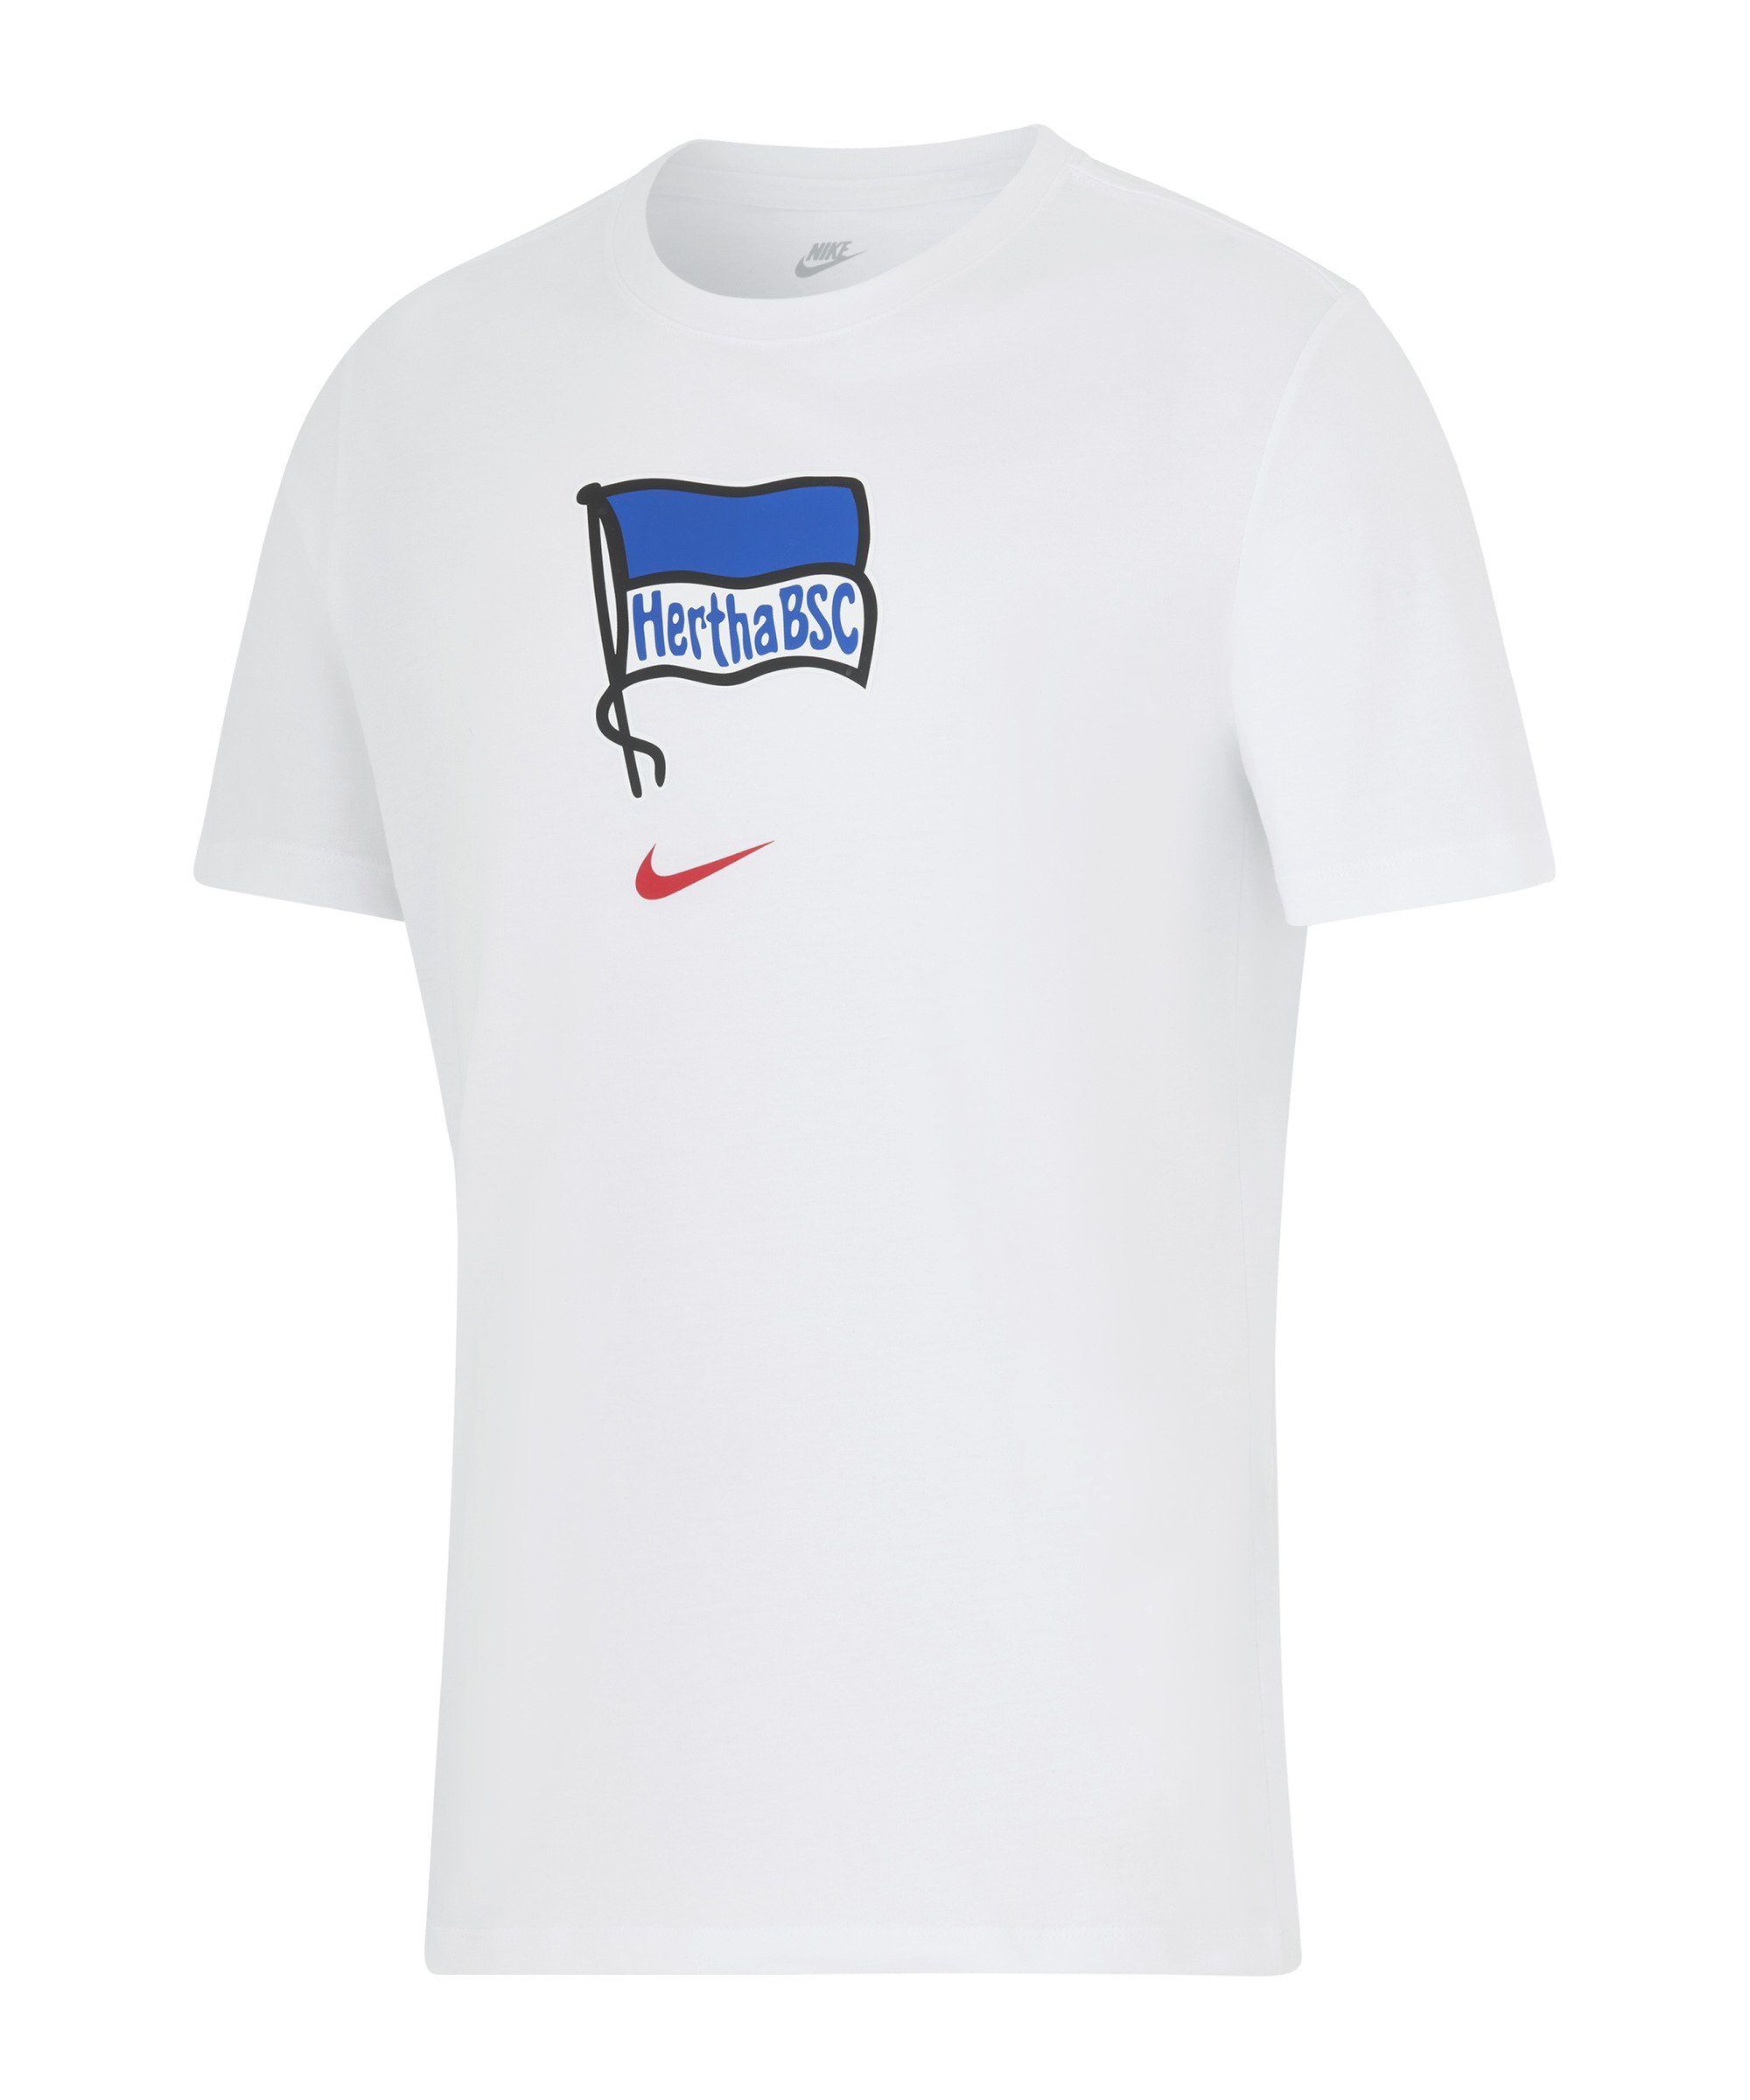 Nike T-Shirt Hertha BSC T-Shirt default weiss